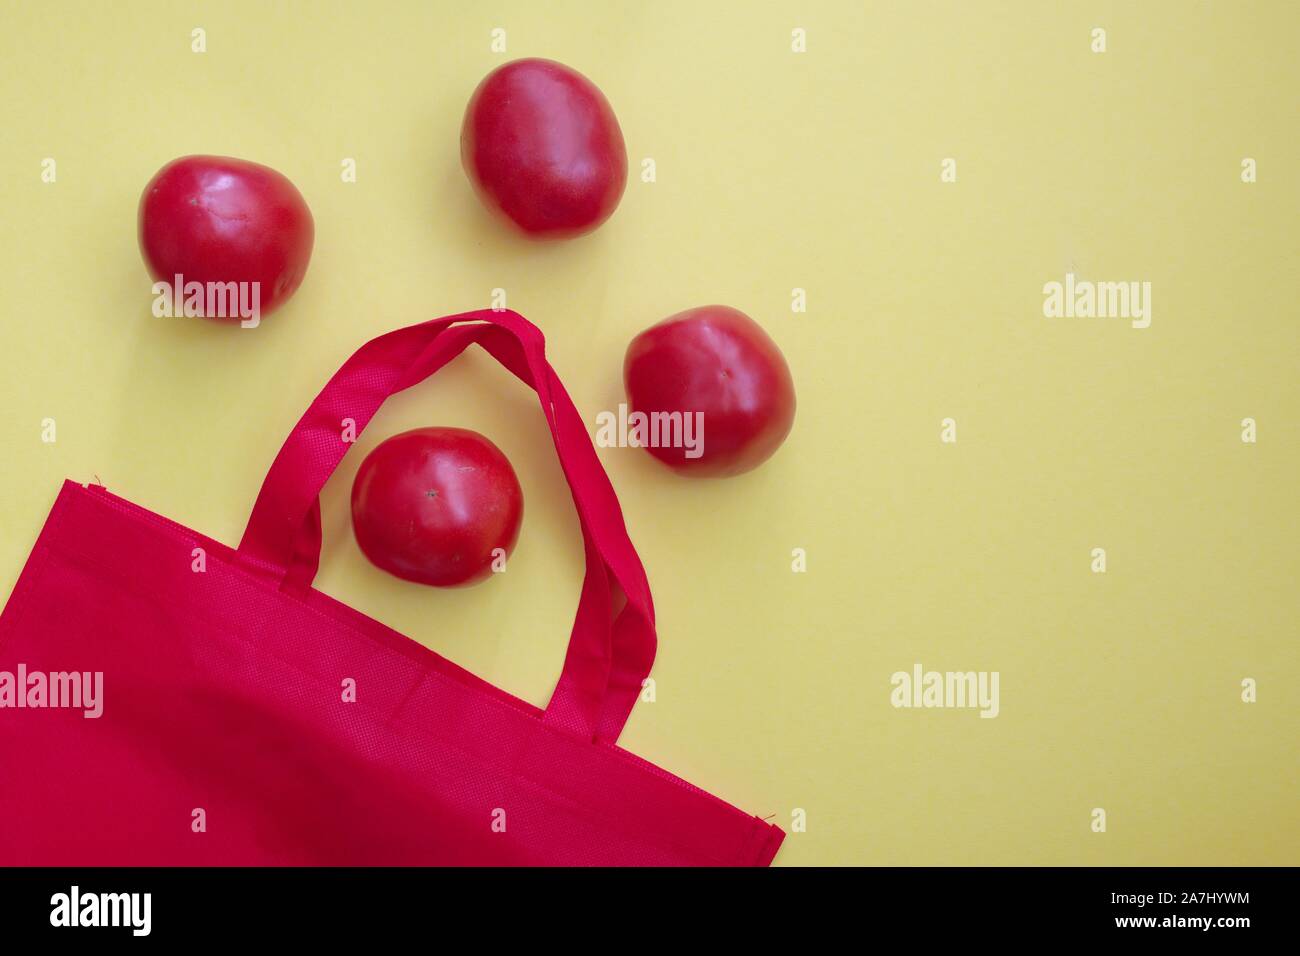 Bolsa de compras reutilizable rojo con tomates contra el fondo amarillo Foto de stock